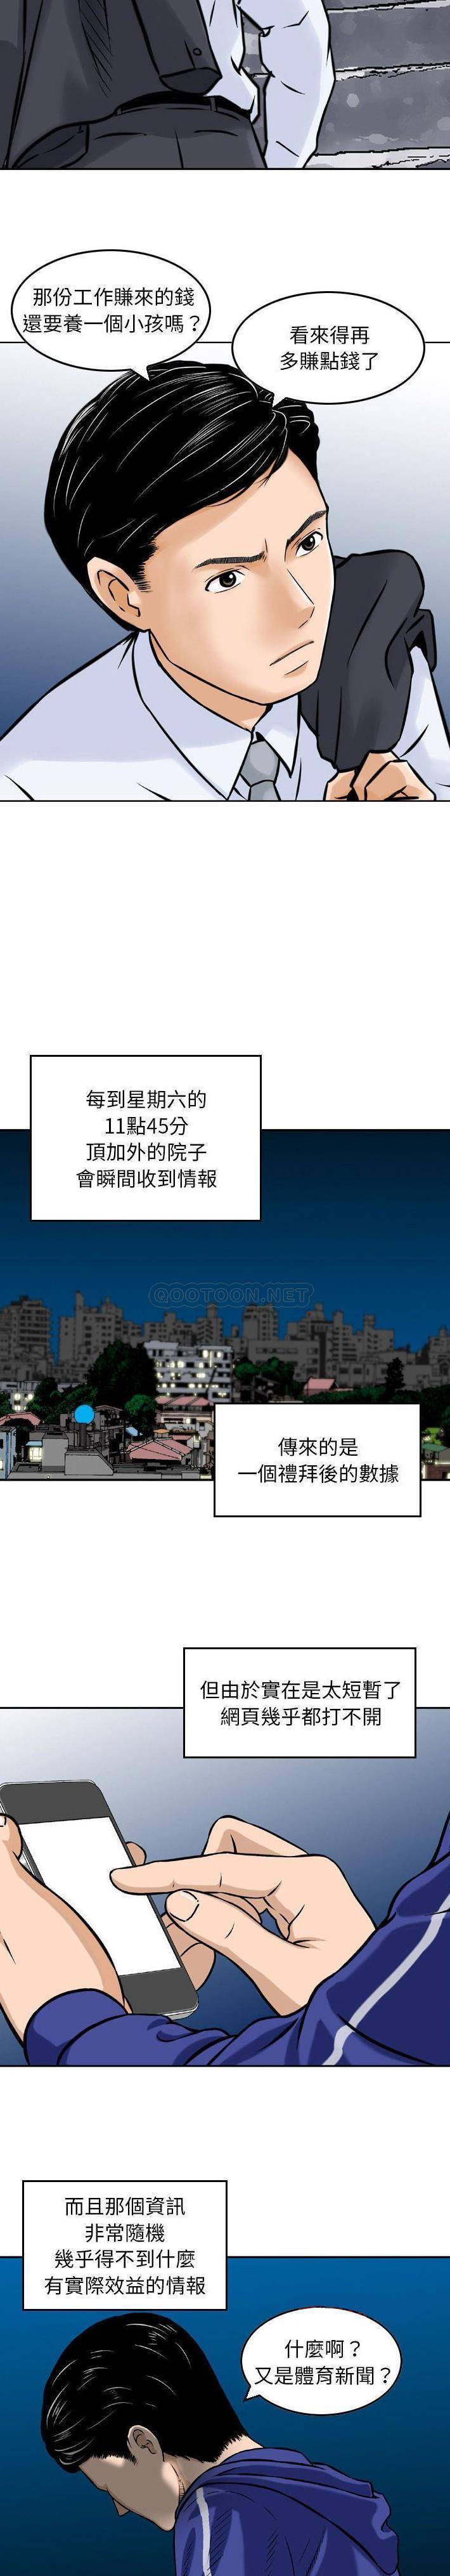 韩国污漫画 金錢的魅力 第4话 3